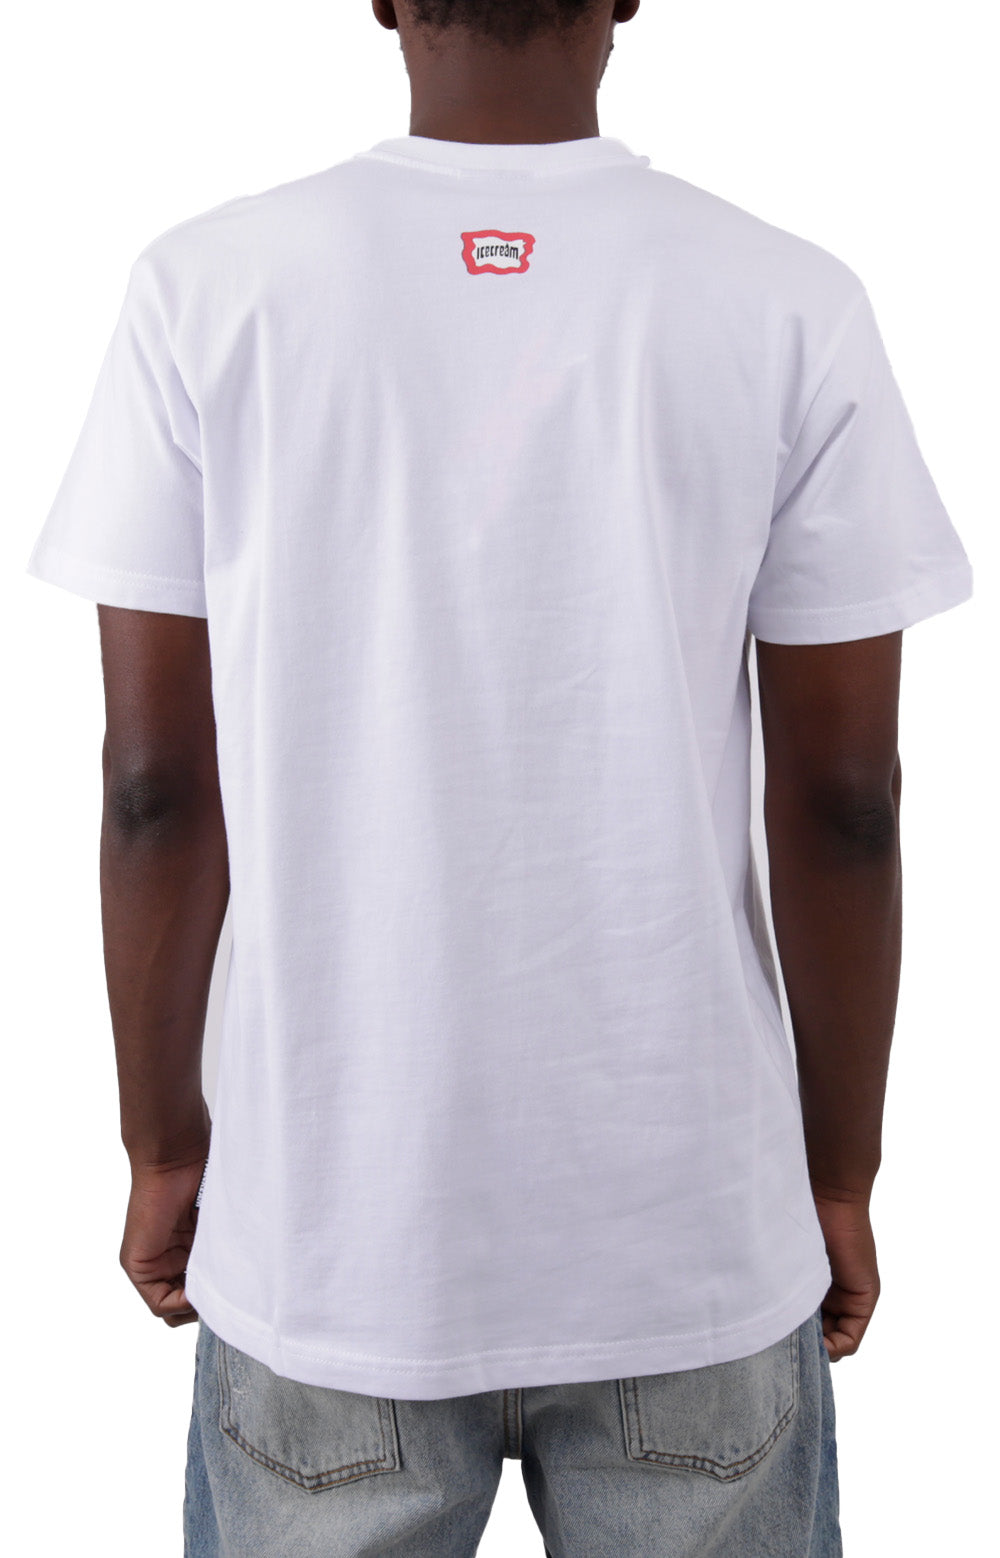 Monstar T-Shirt - White